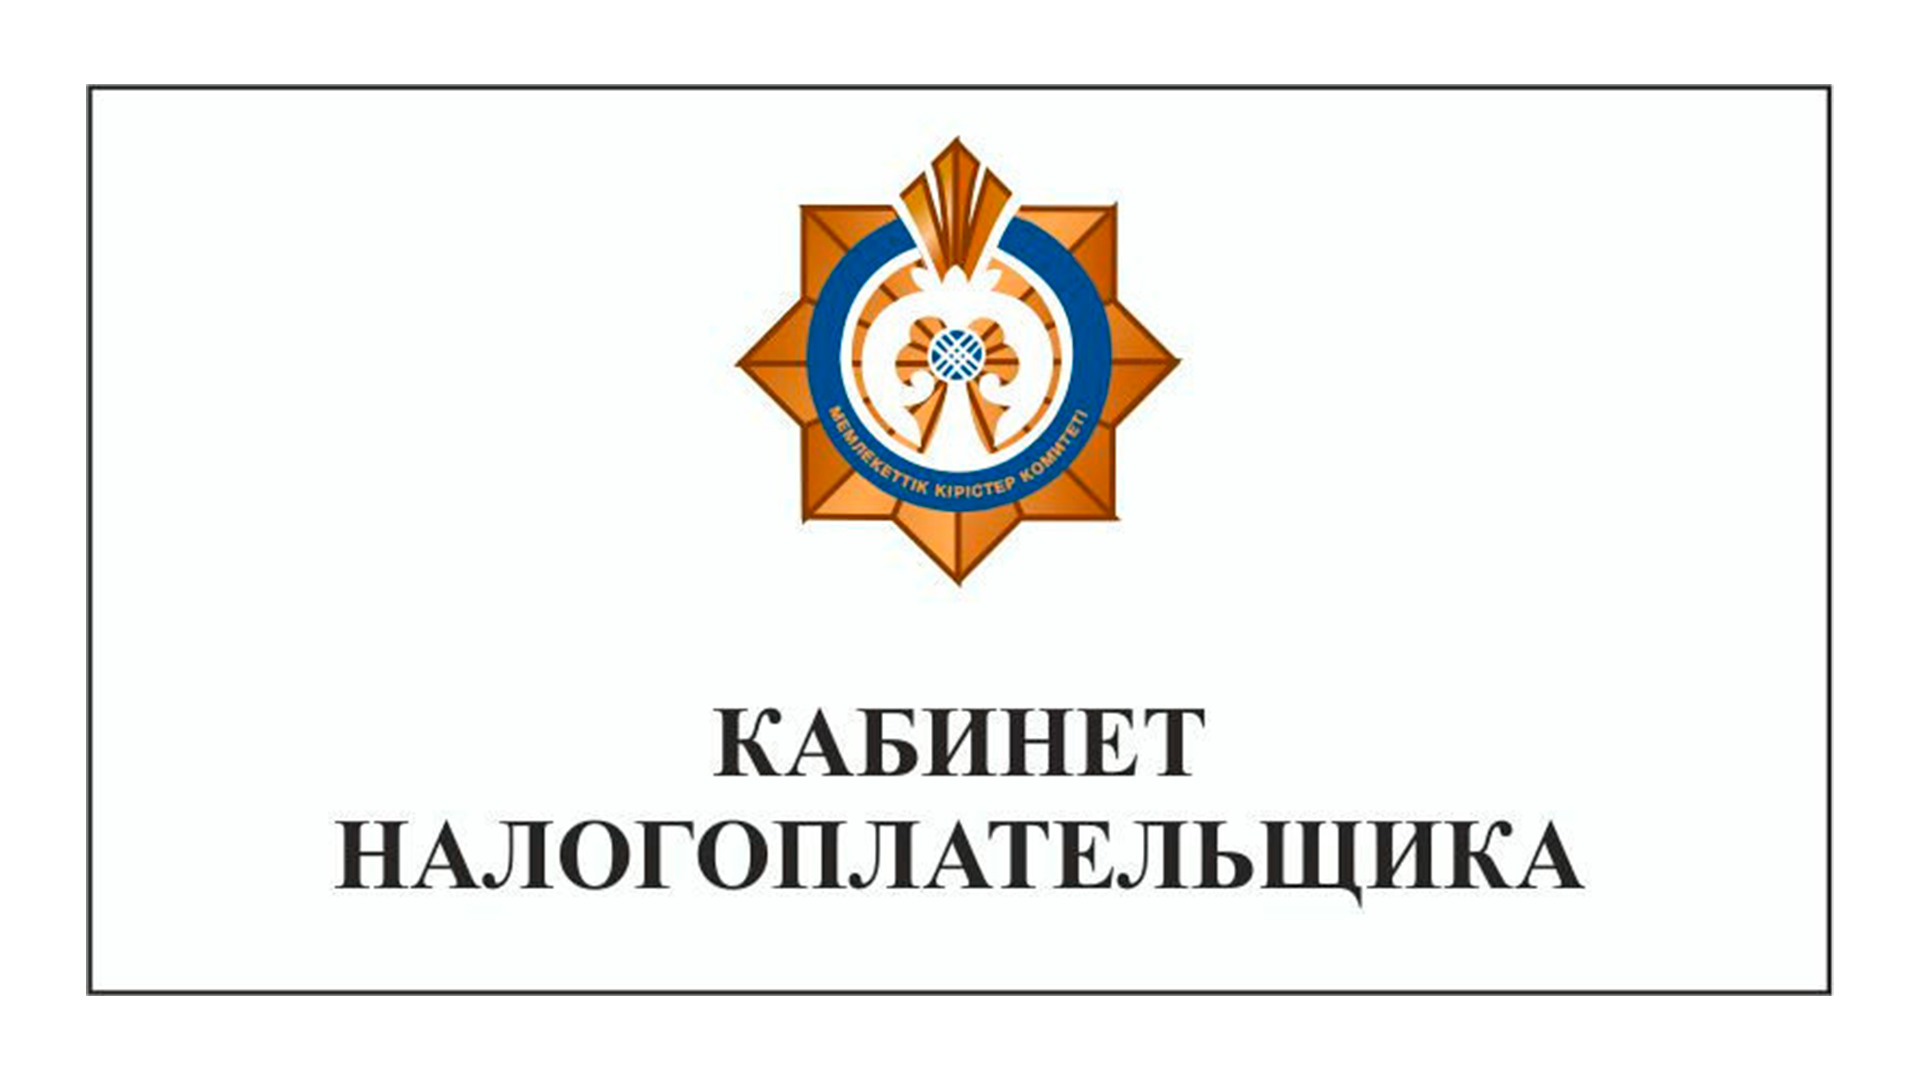 Vcabinet kz. Кабинет налогоплательщика. Салык.кз кабинет налогоплательщика. Кабинет налогоплательщика логотип. Логотип налоговой Казахстана.